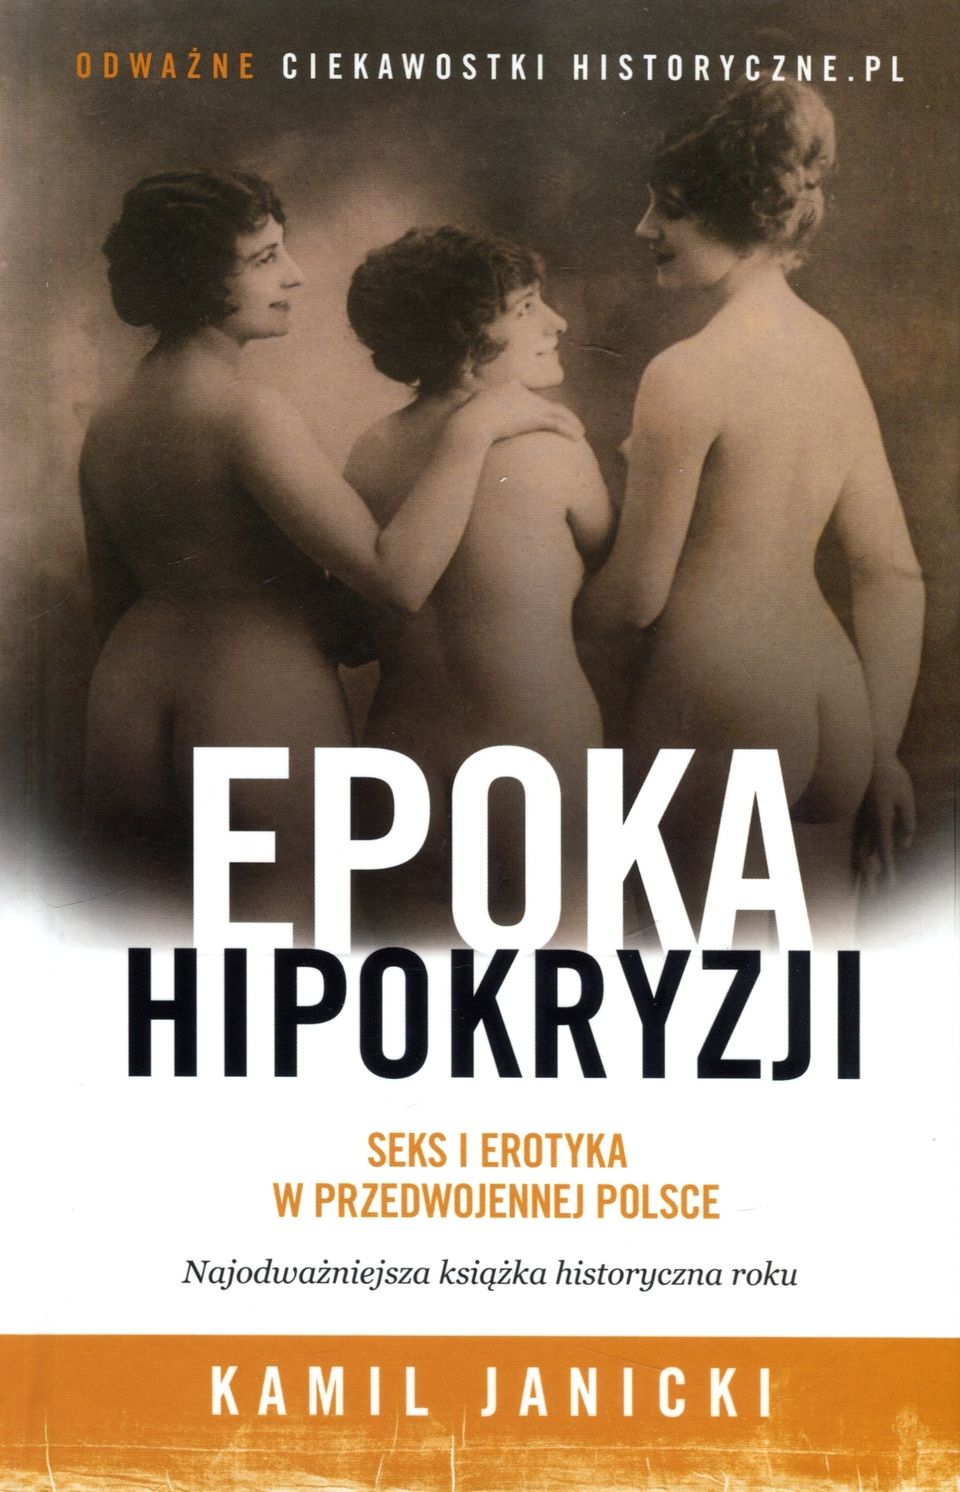 Artykuł powstał w oparciu o książkę Kamila Janickiego pt. „Epoka hipokryzji. Seks i erotyka w przedwojennej Polsce”.